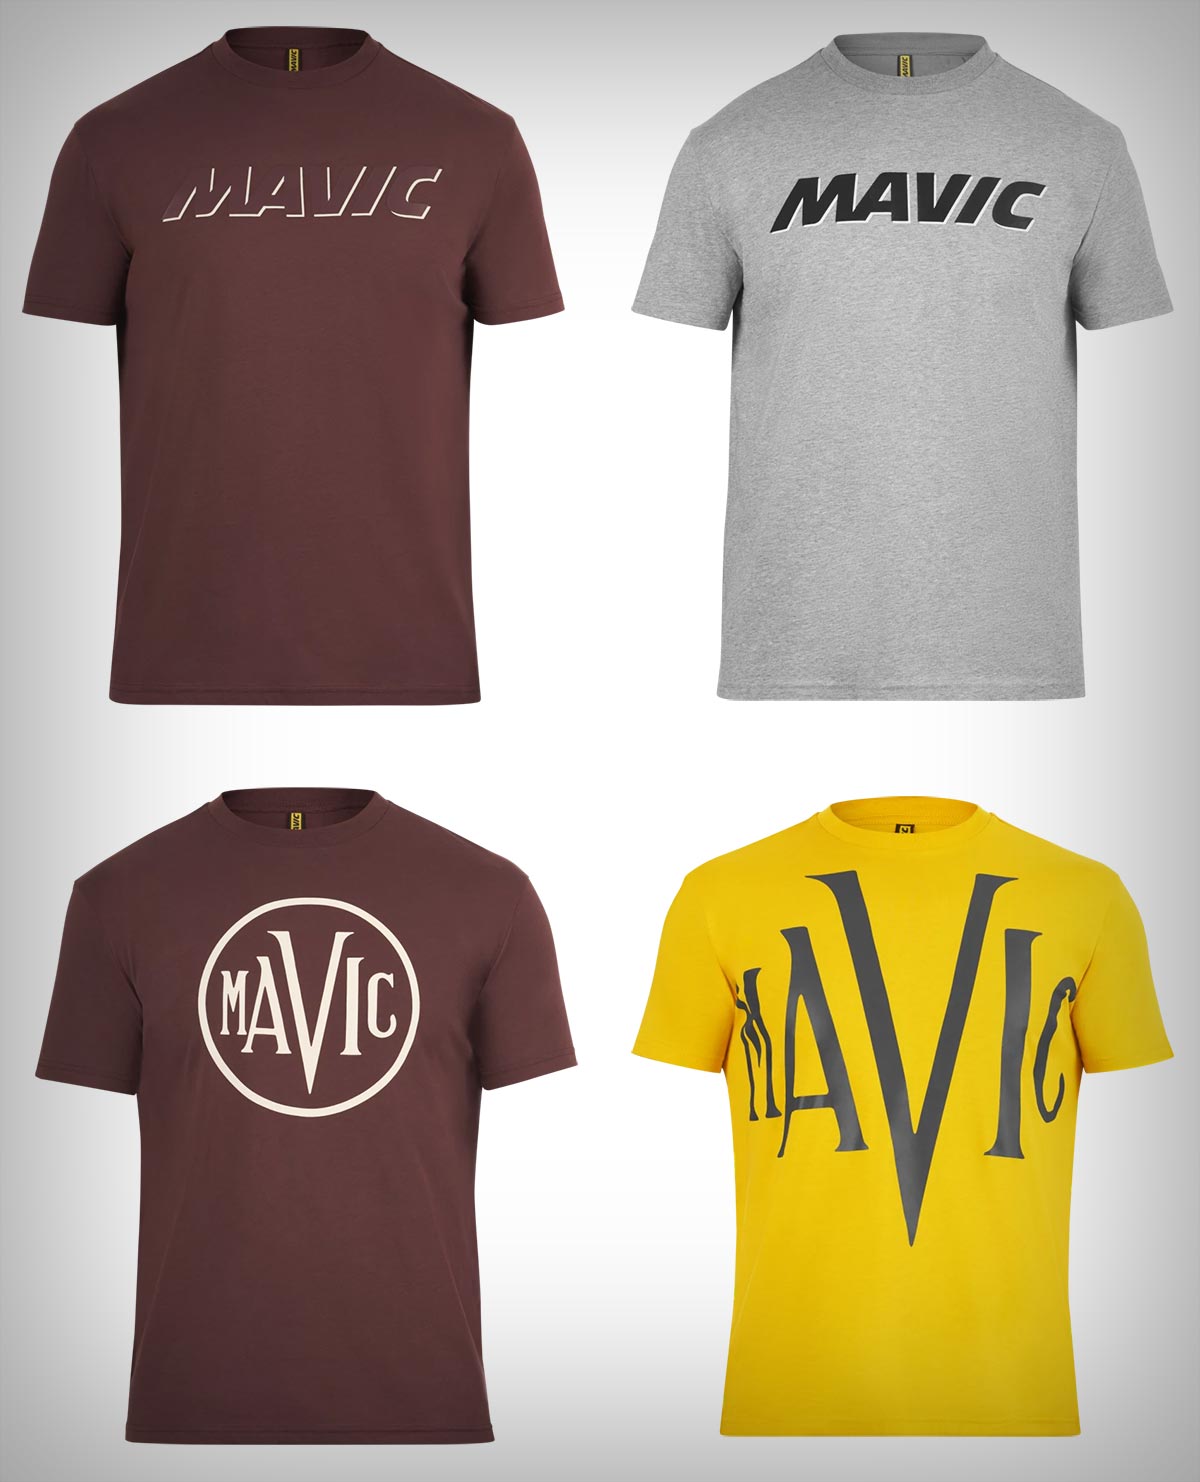 Mavic presenta la colección de ropa casual Logoline & Heritage, combinando un estilo Old School y moderno